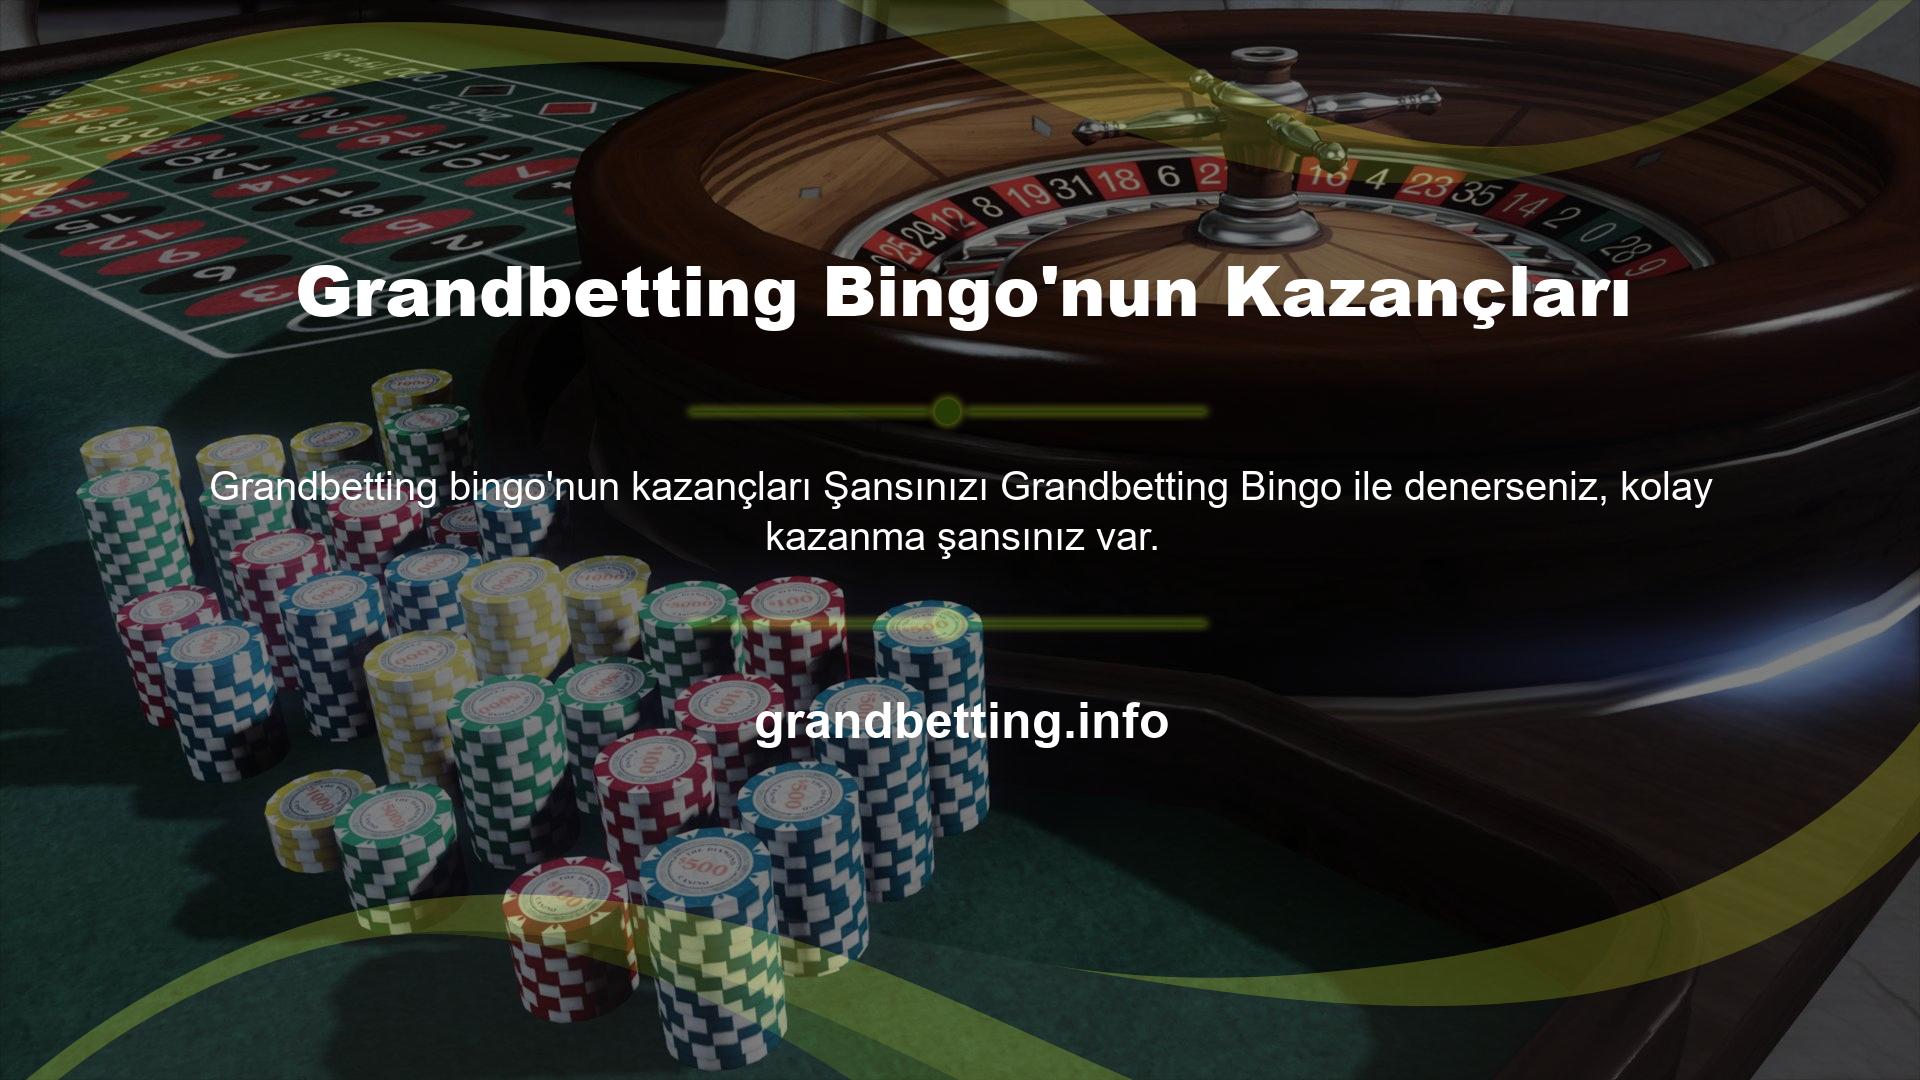 Bingo, canlı bahis mağazalarında en popüler ve popüler oyunlardan biridir